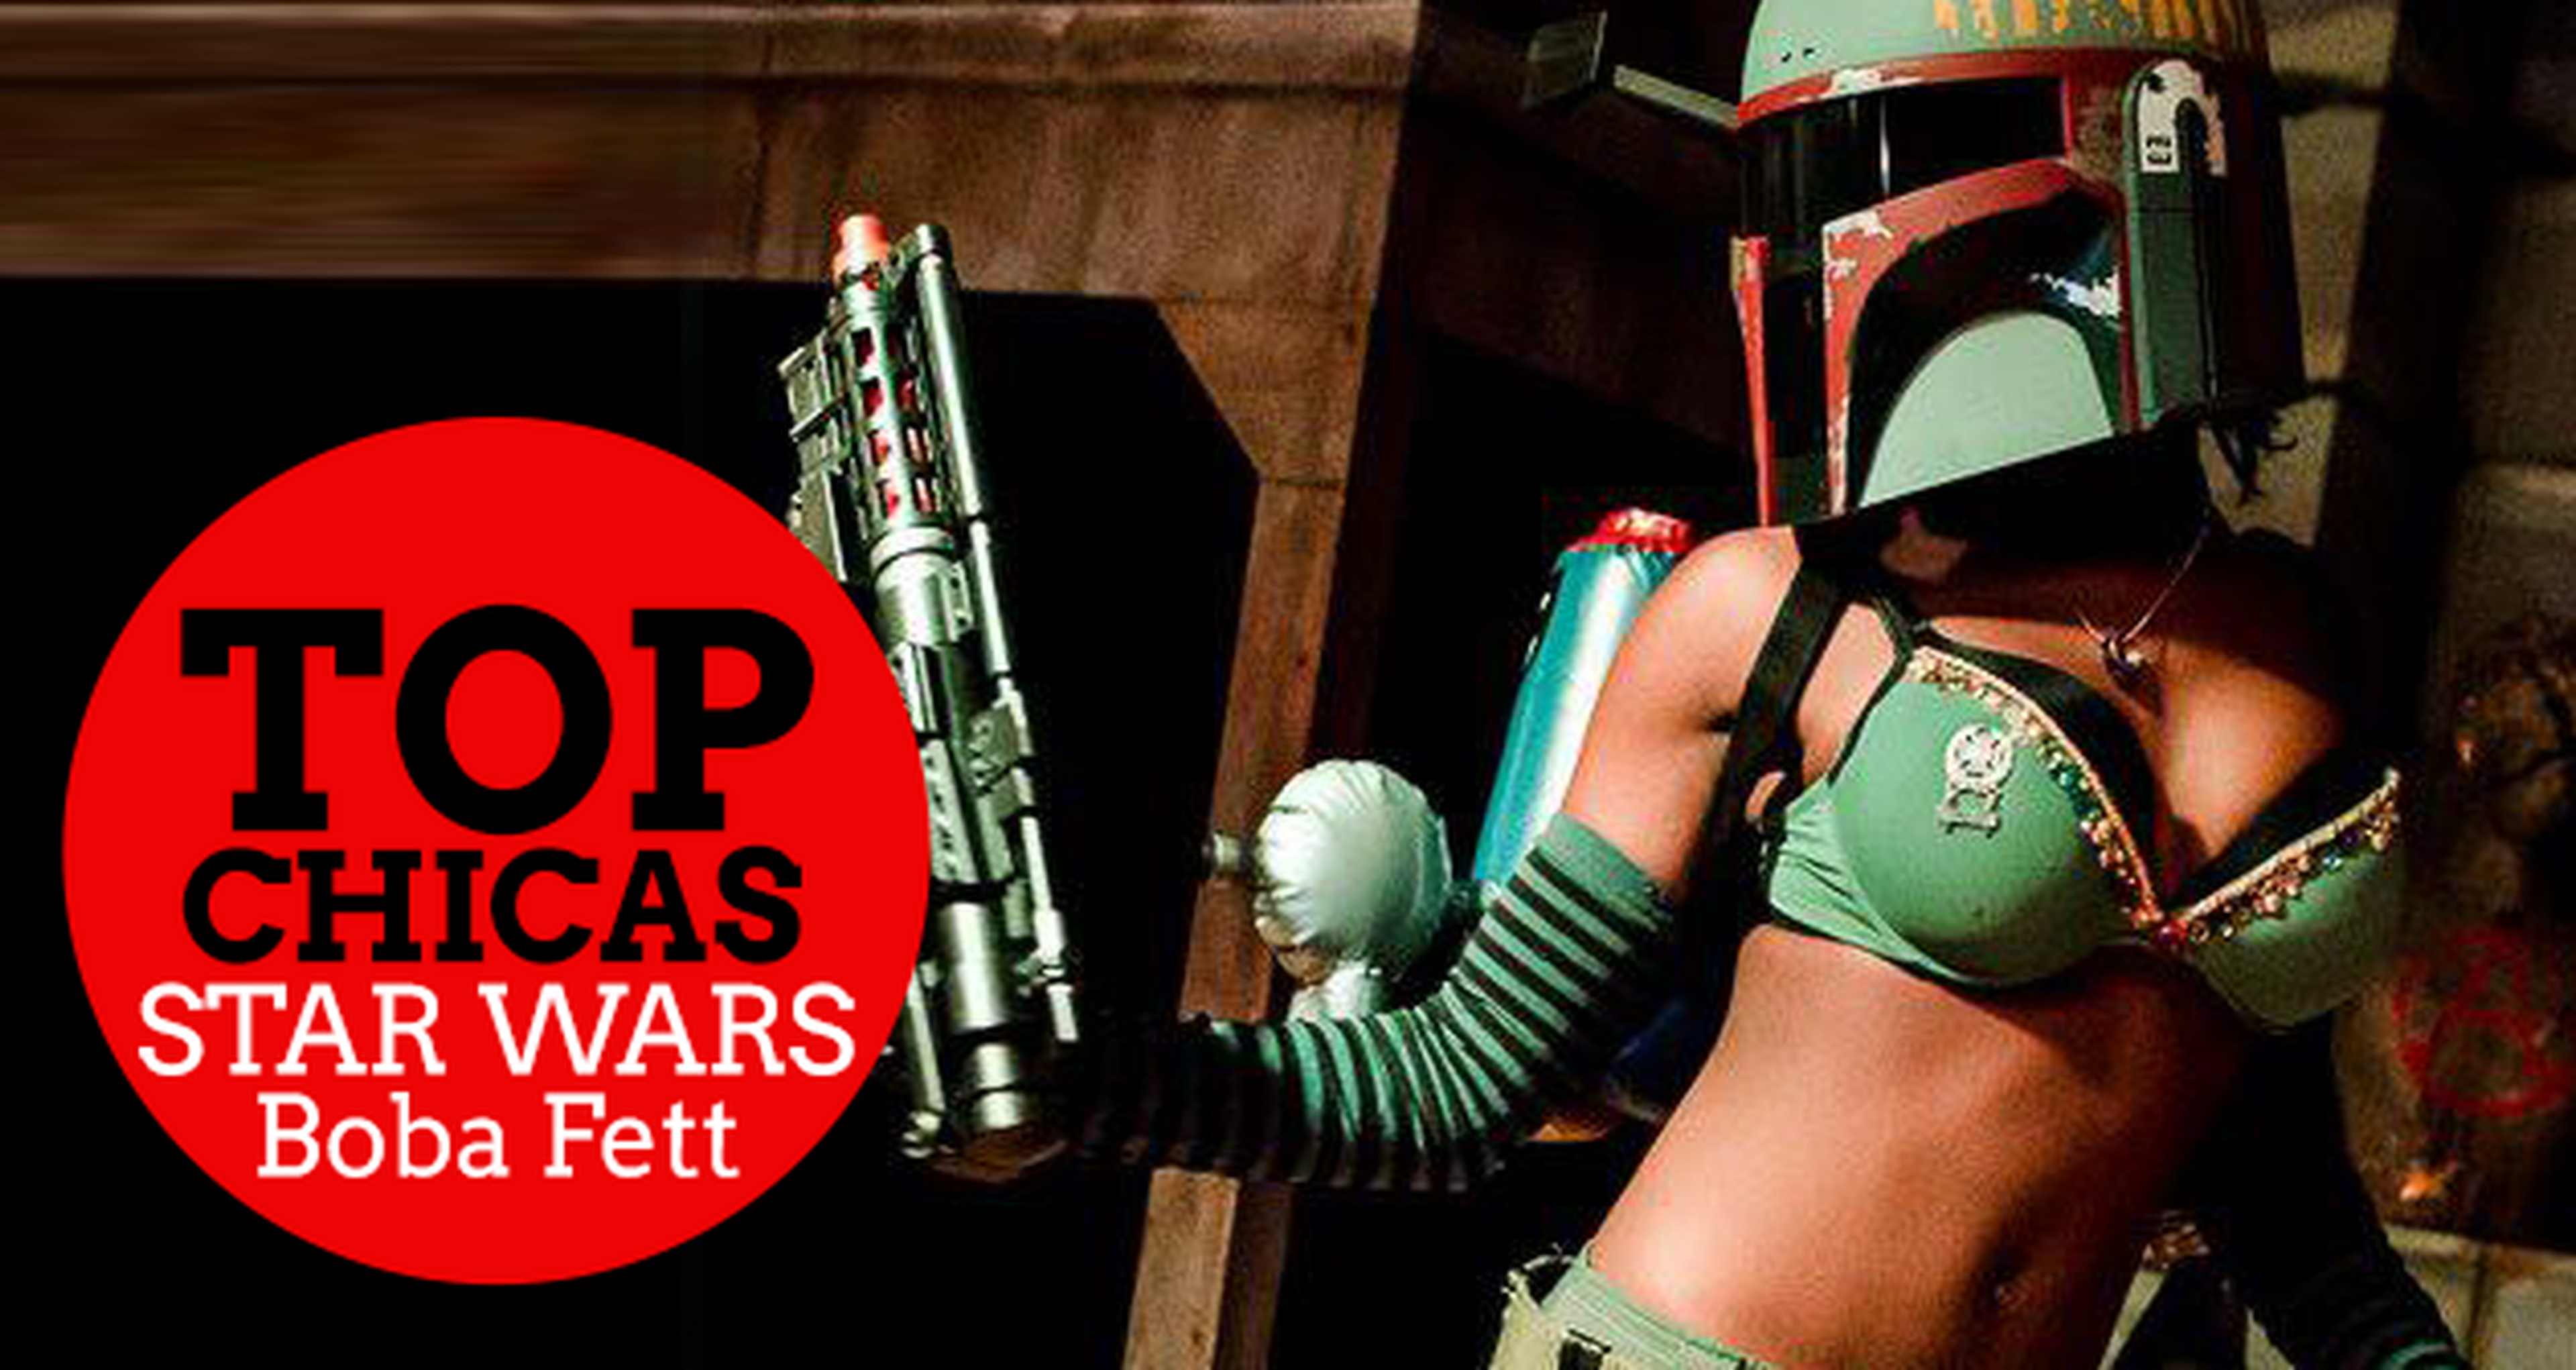 Top chicas Star Wars: Boba Fett